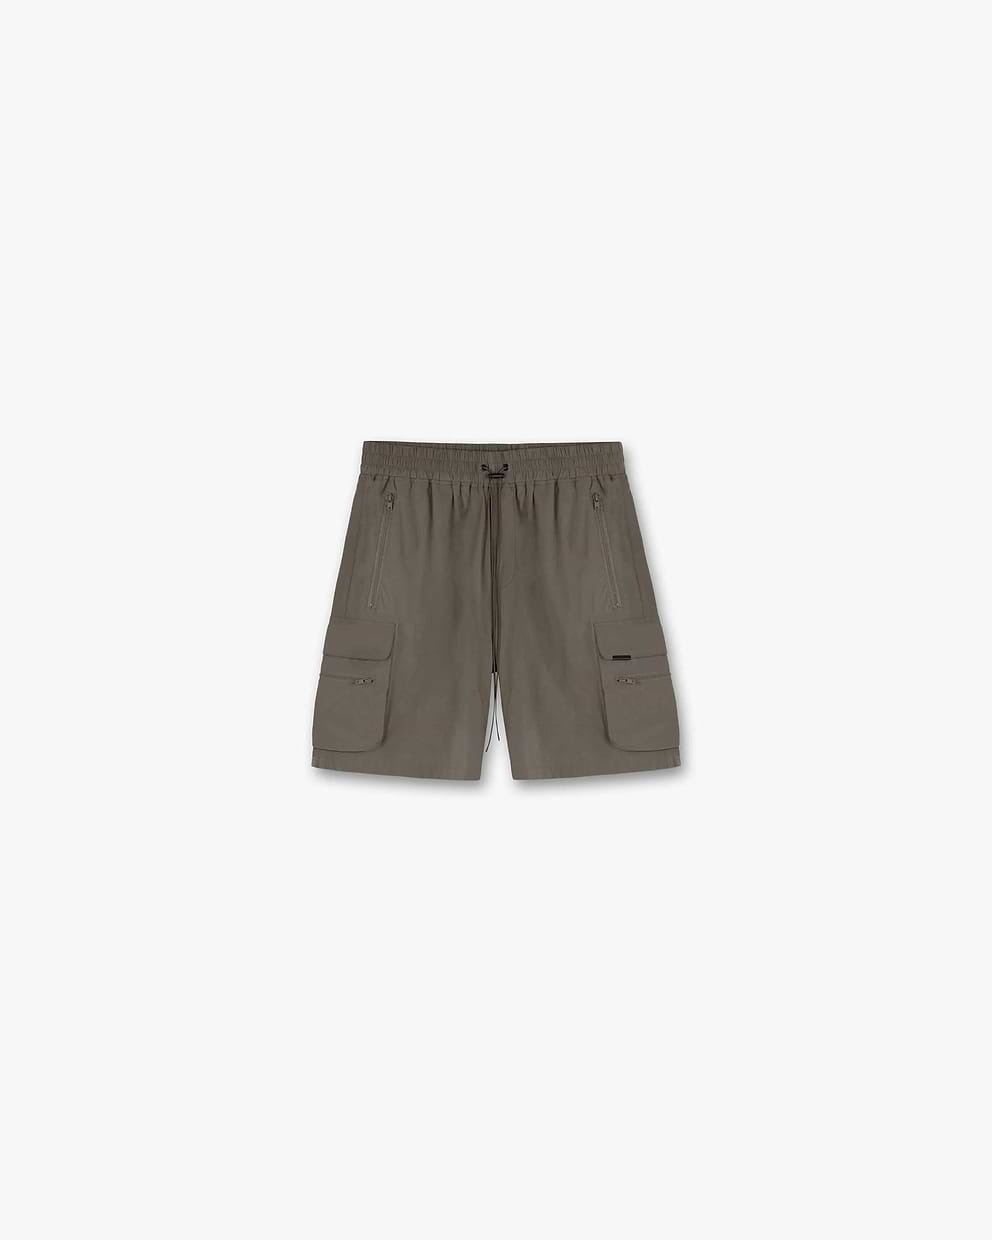 247 Shorts - Olive